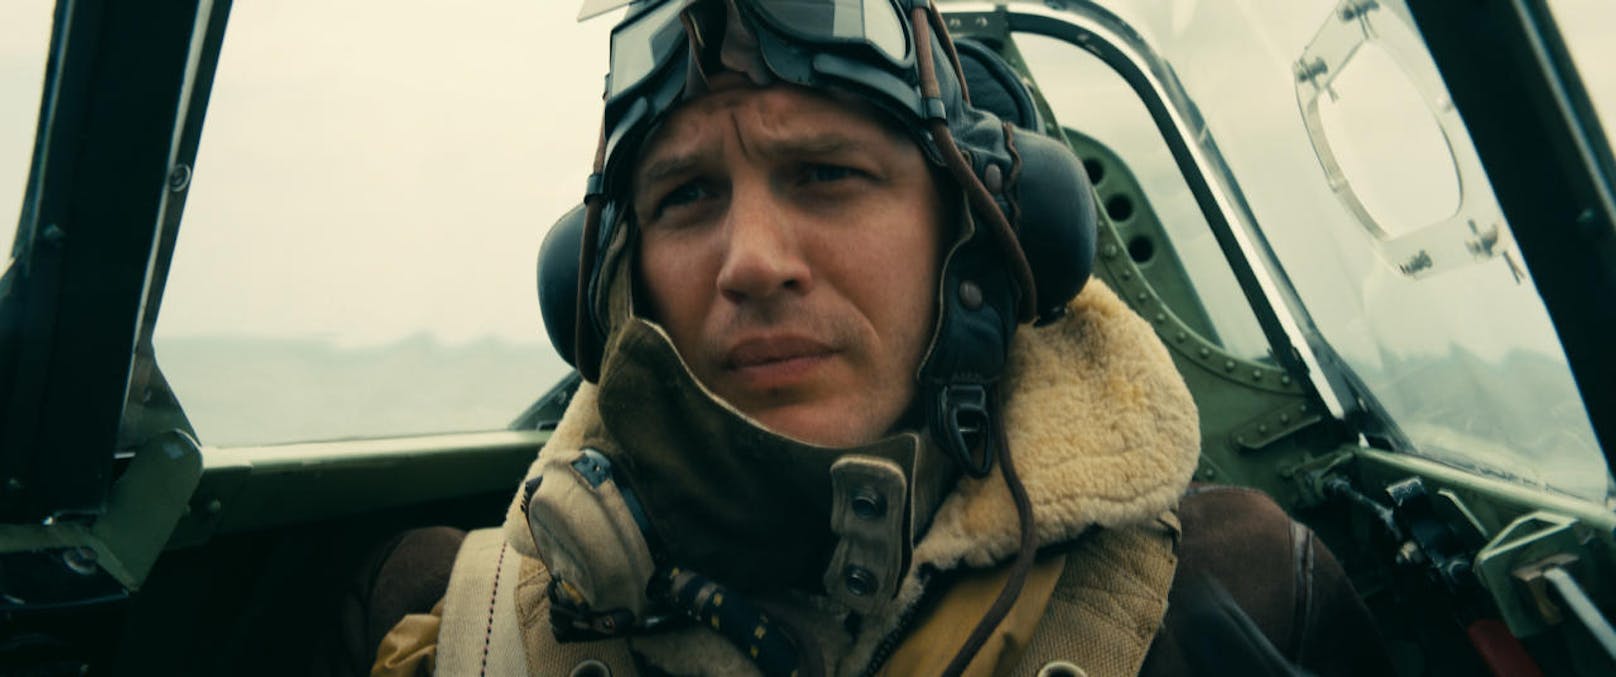 Tom Hardy in "Dunkirk"